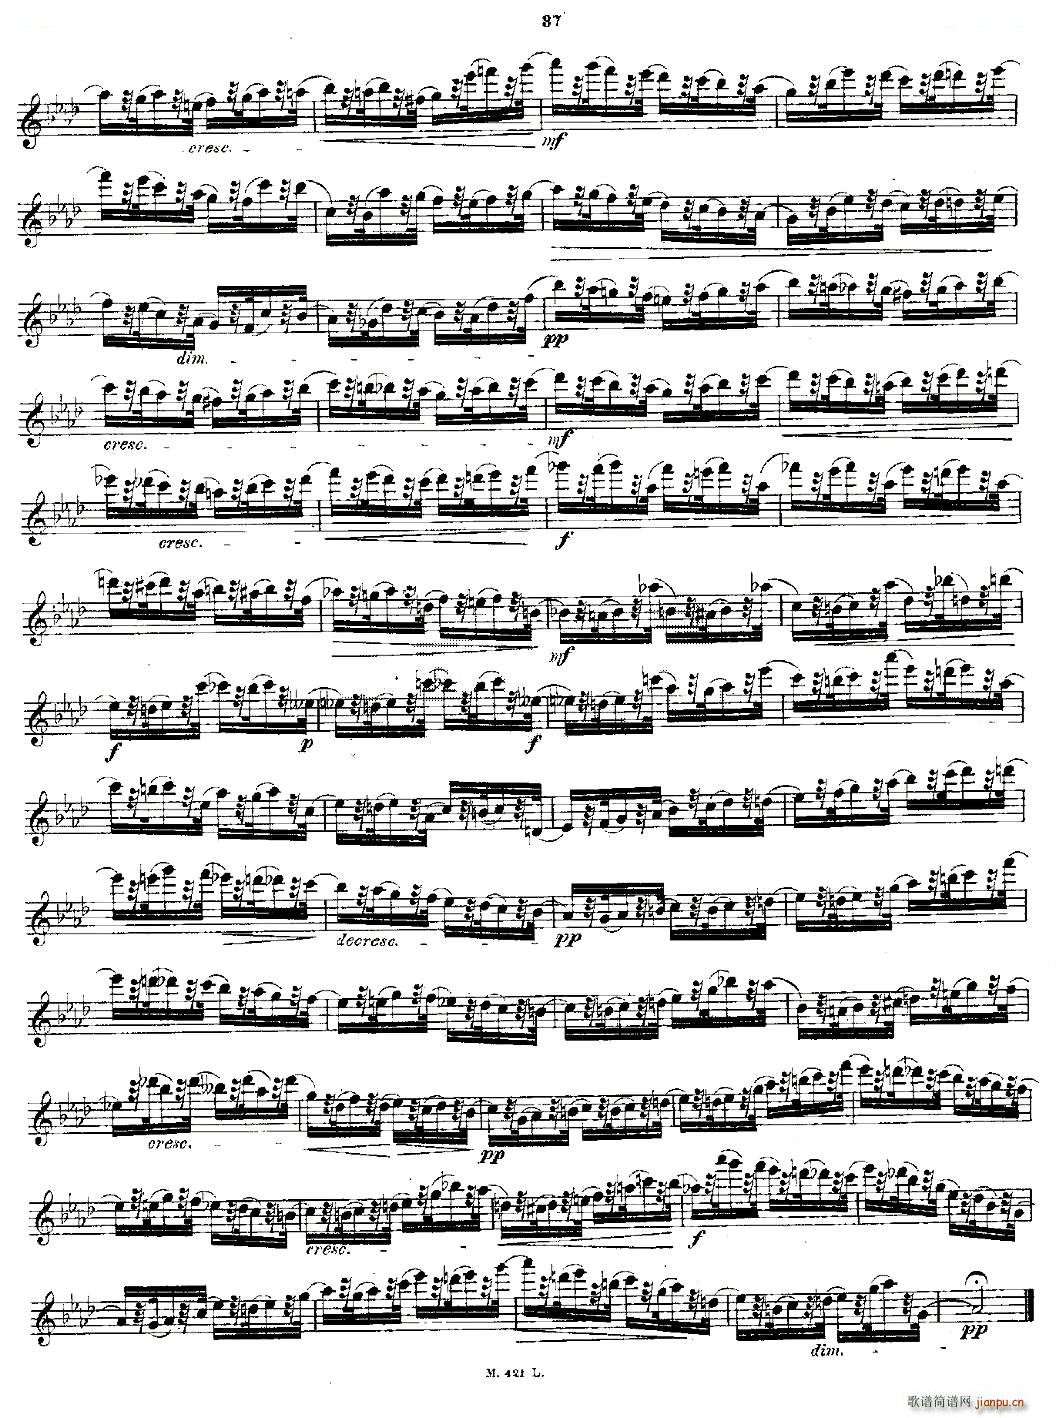 24首长笛练习曲 Op 15 之16 20 铜管(笛箫谱)5